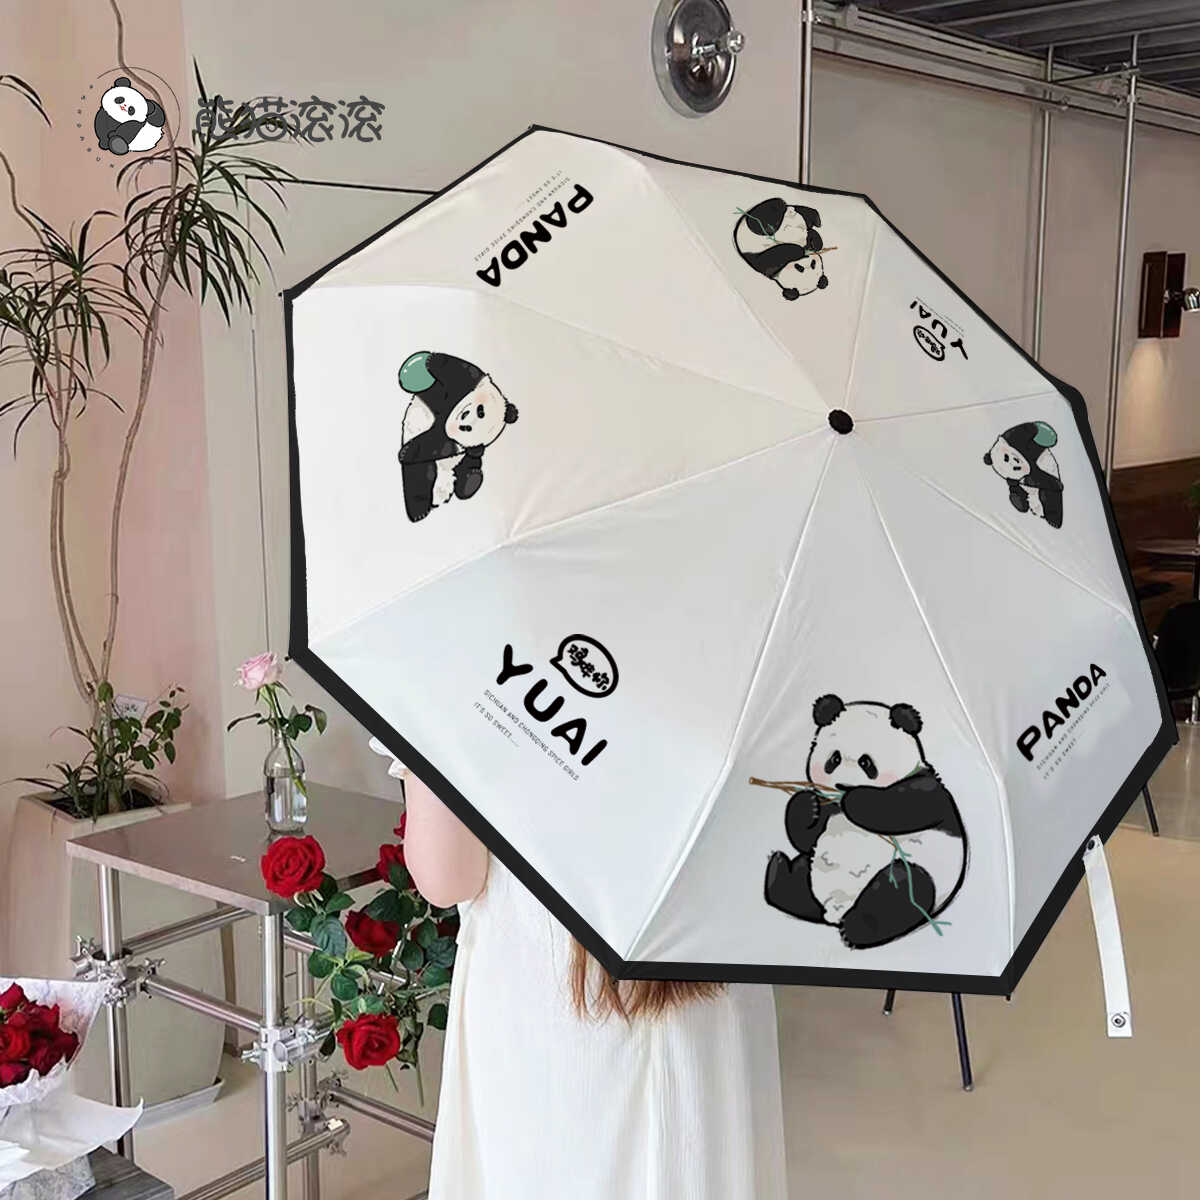 【渝爱原创定制雨伞】渝爱五折伞可爱定制原创便携雨伞可爱大熊猫